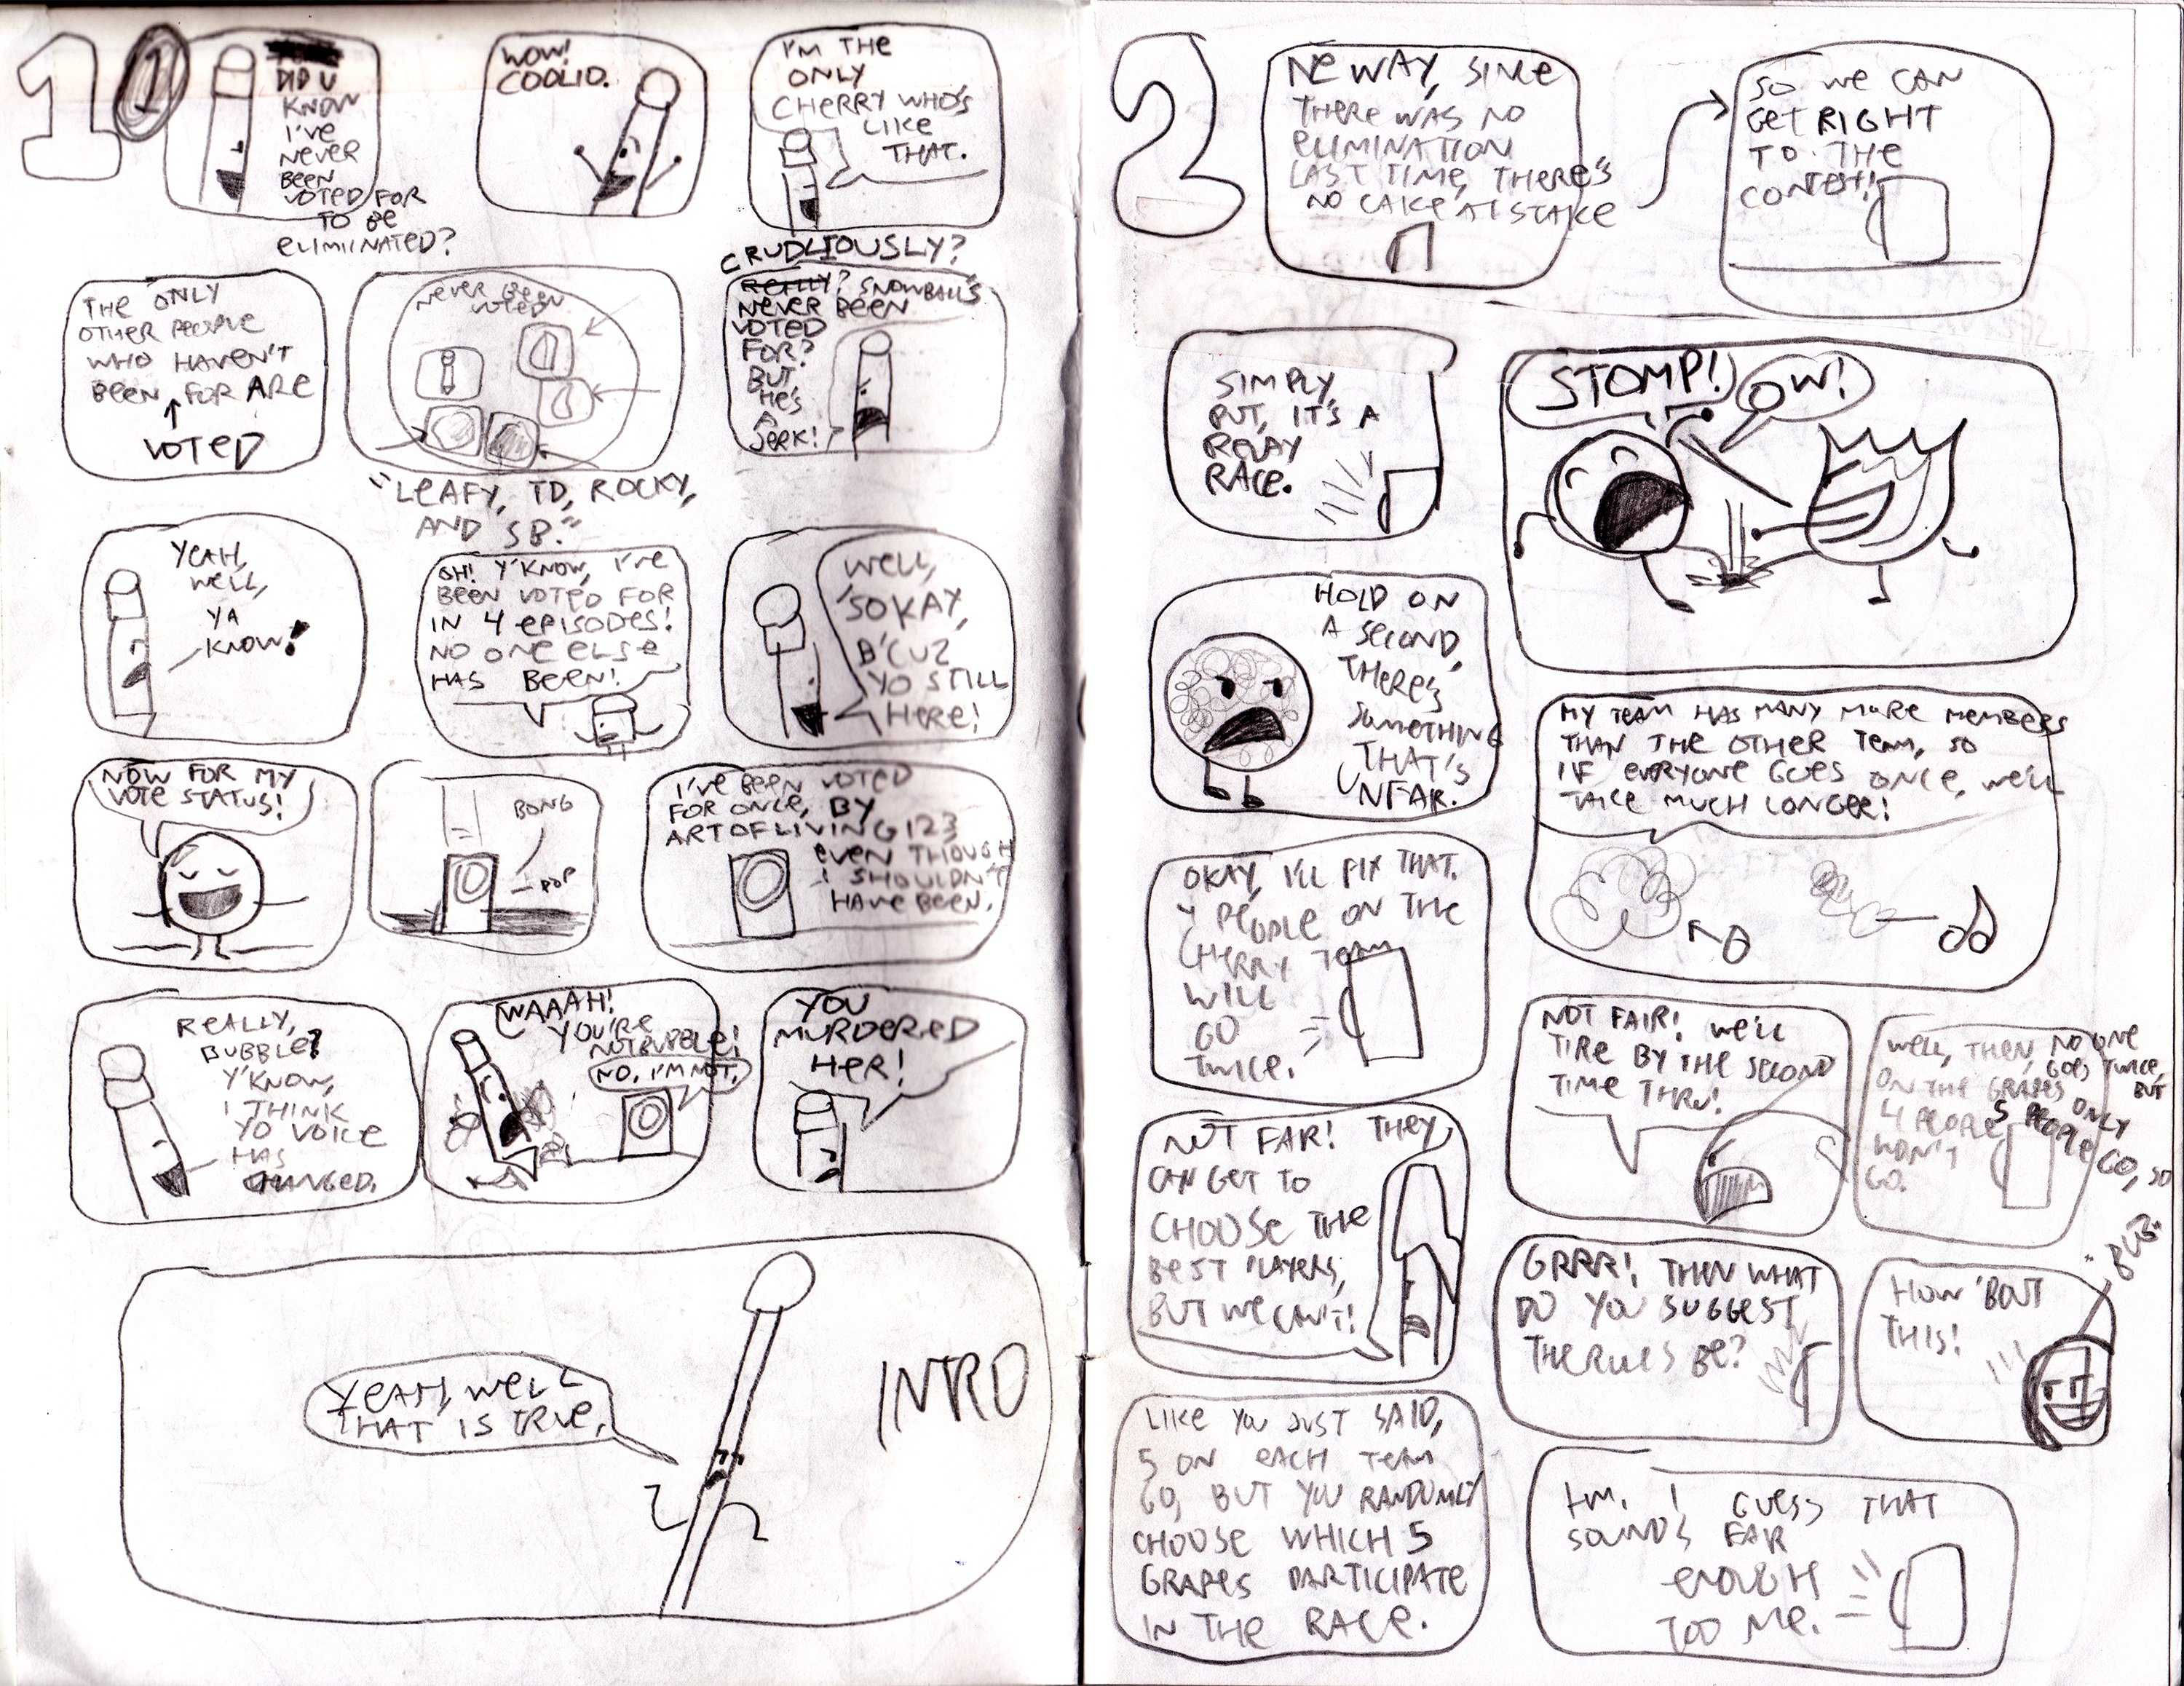 bfdi comics part 8